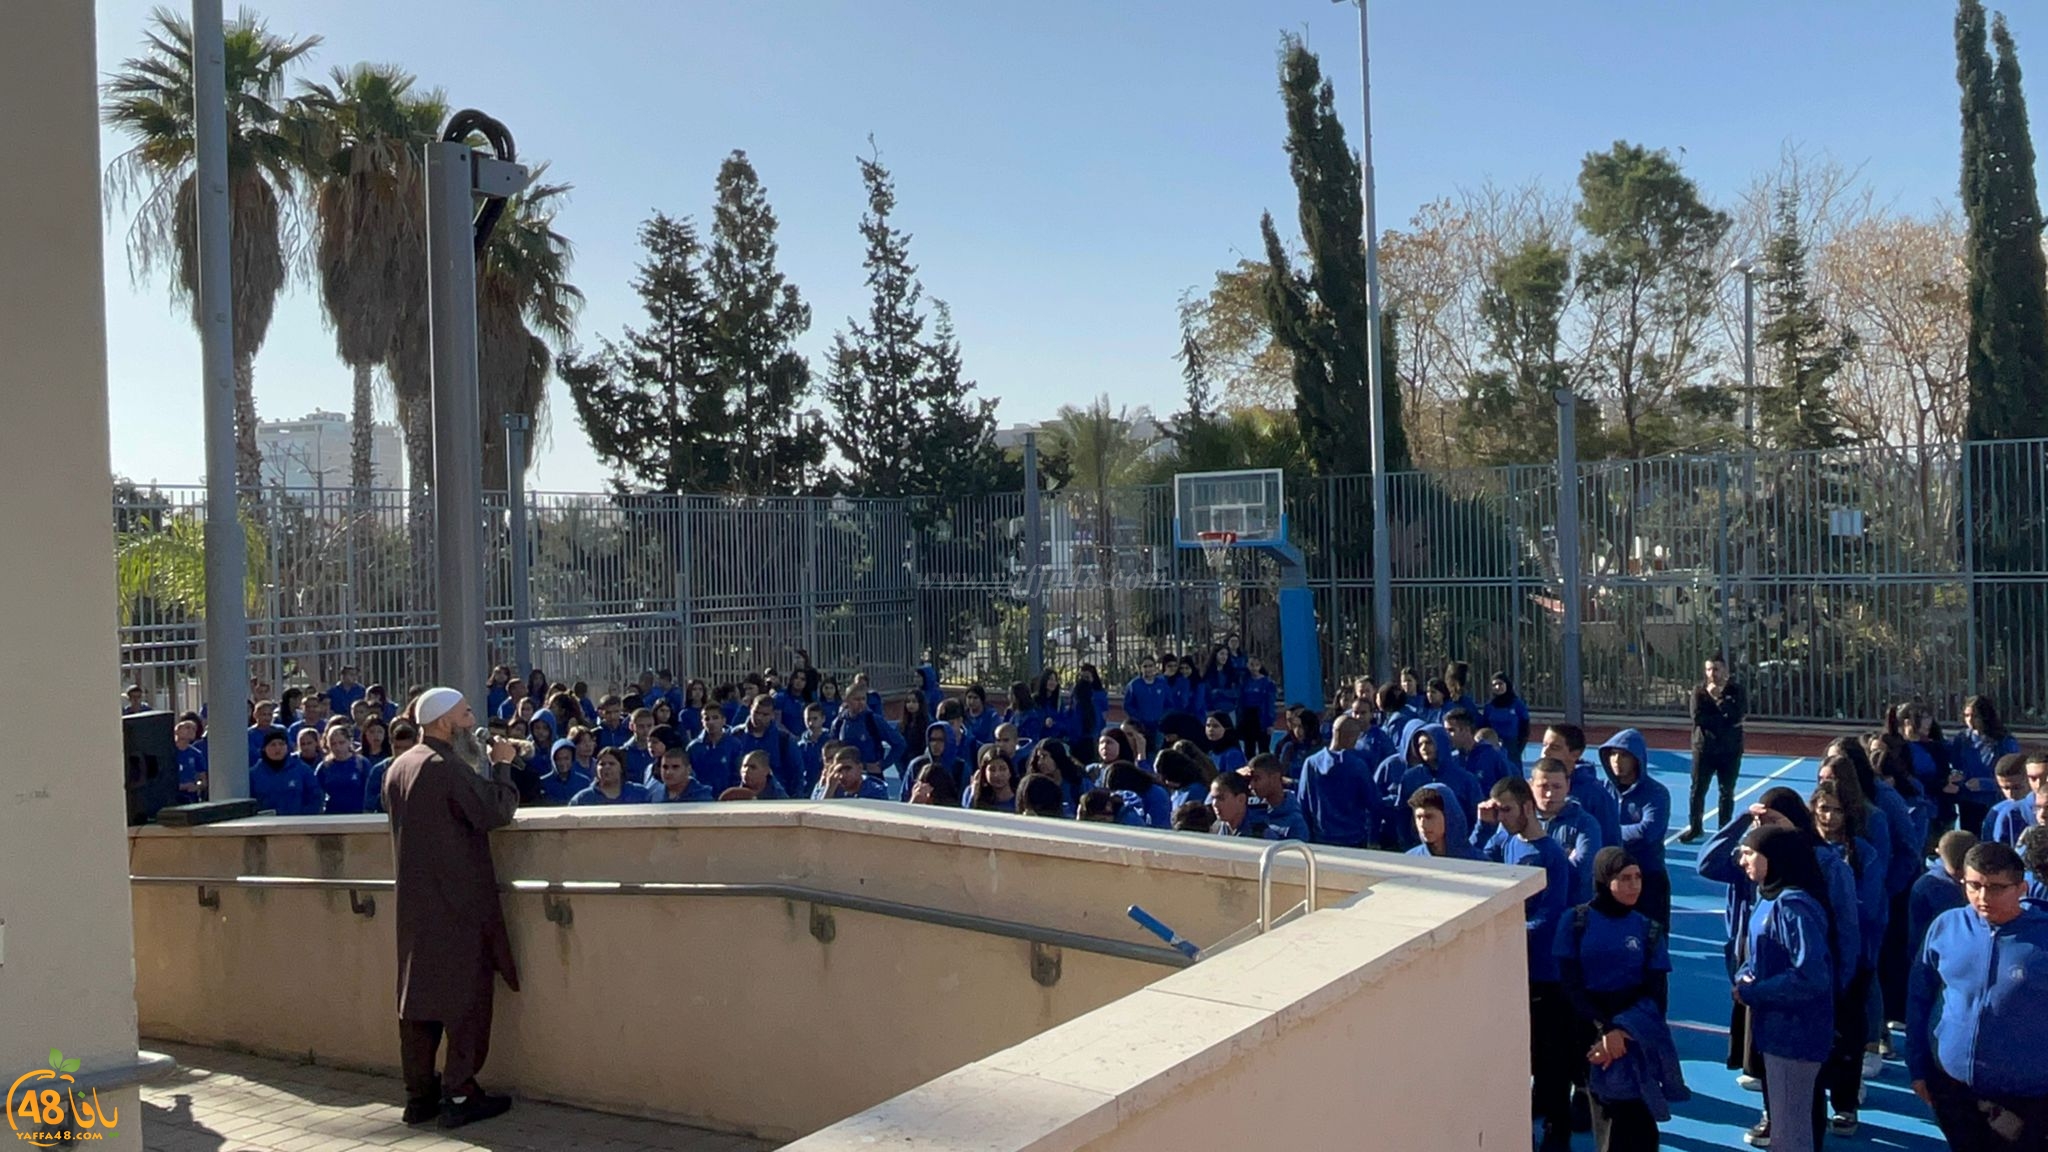  يافا: محاضرة عن فضل القرآن للشيخ أحمد سطل في مدرسة أجيال الثانوية